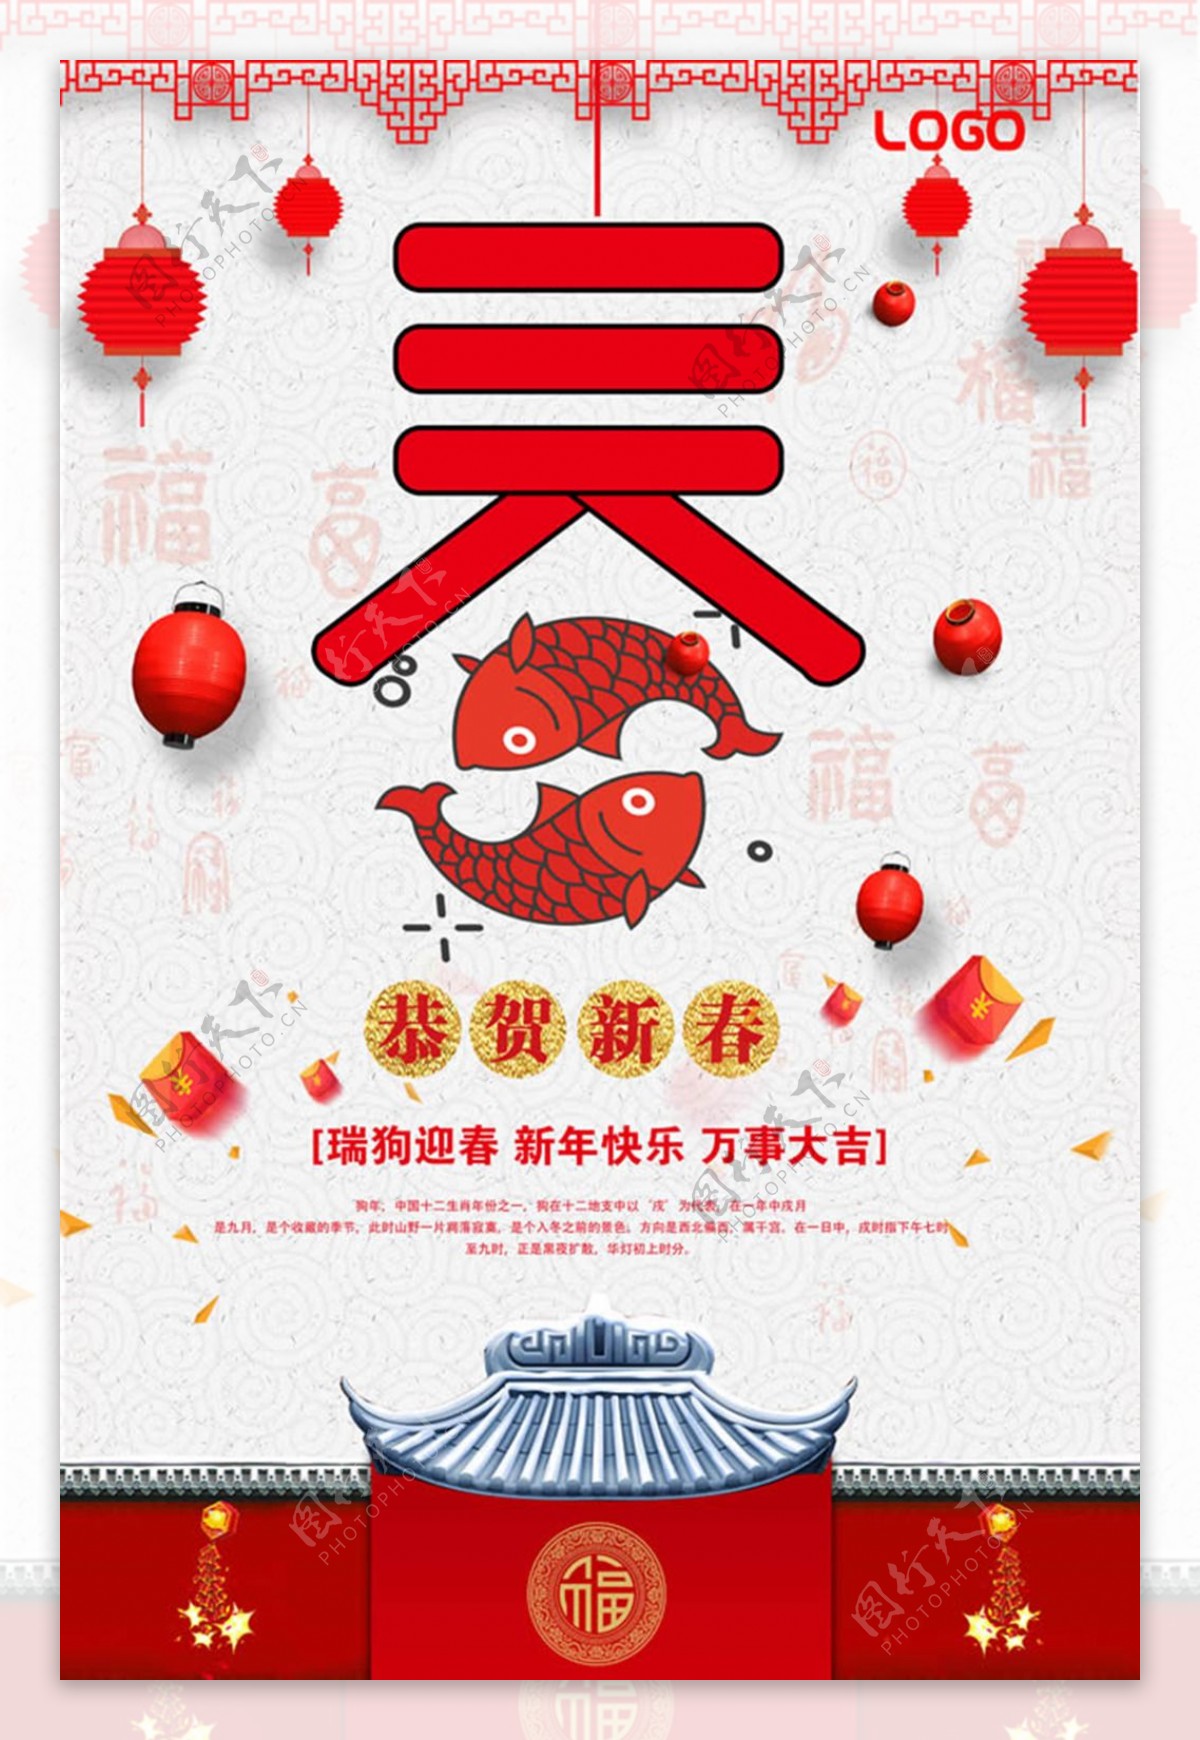 2018恭贺新春狗年春节活动海报